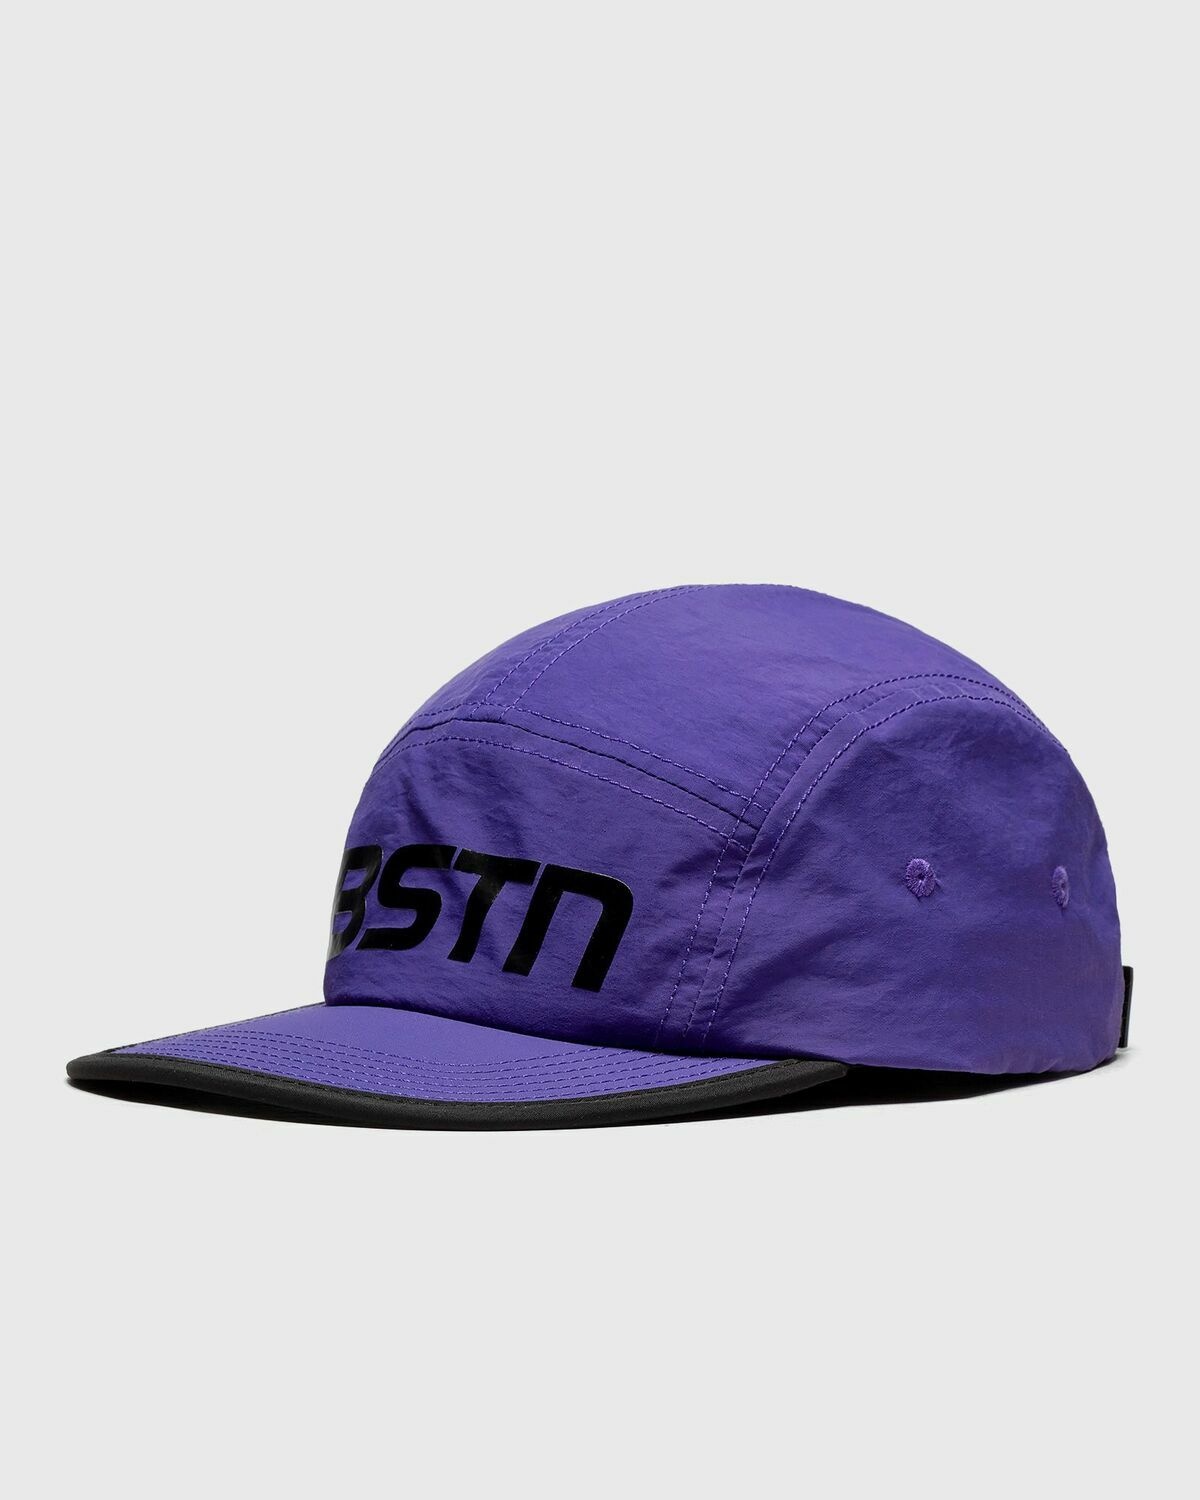 Bstn Brand Lightweight Cap Purple - Mens - Caps